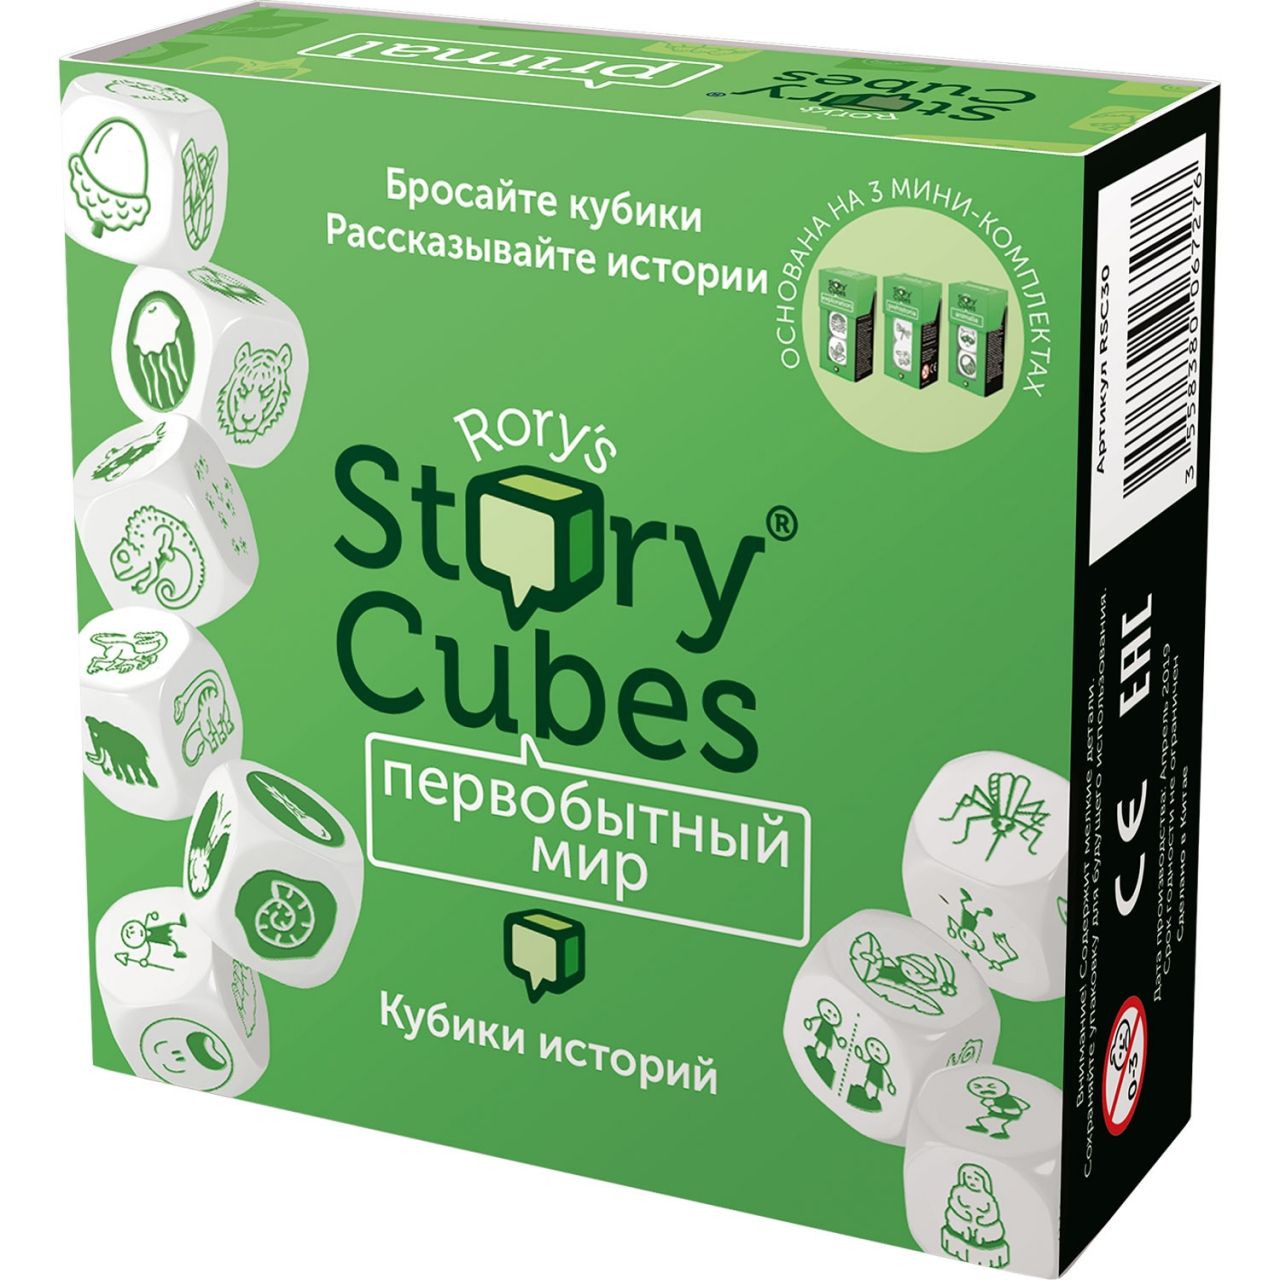 Настольная игра RORYS STORY CUBES RSC30 кубики историй Первобытный мир настольная игра rubiks кубики историй фантазия